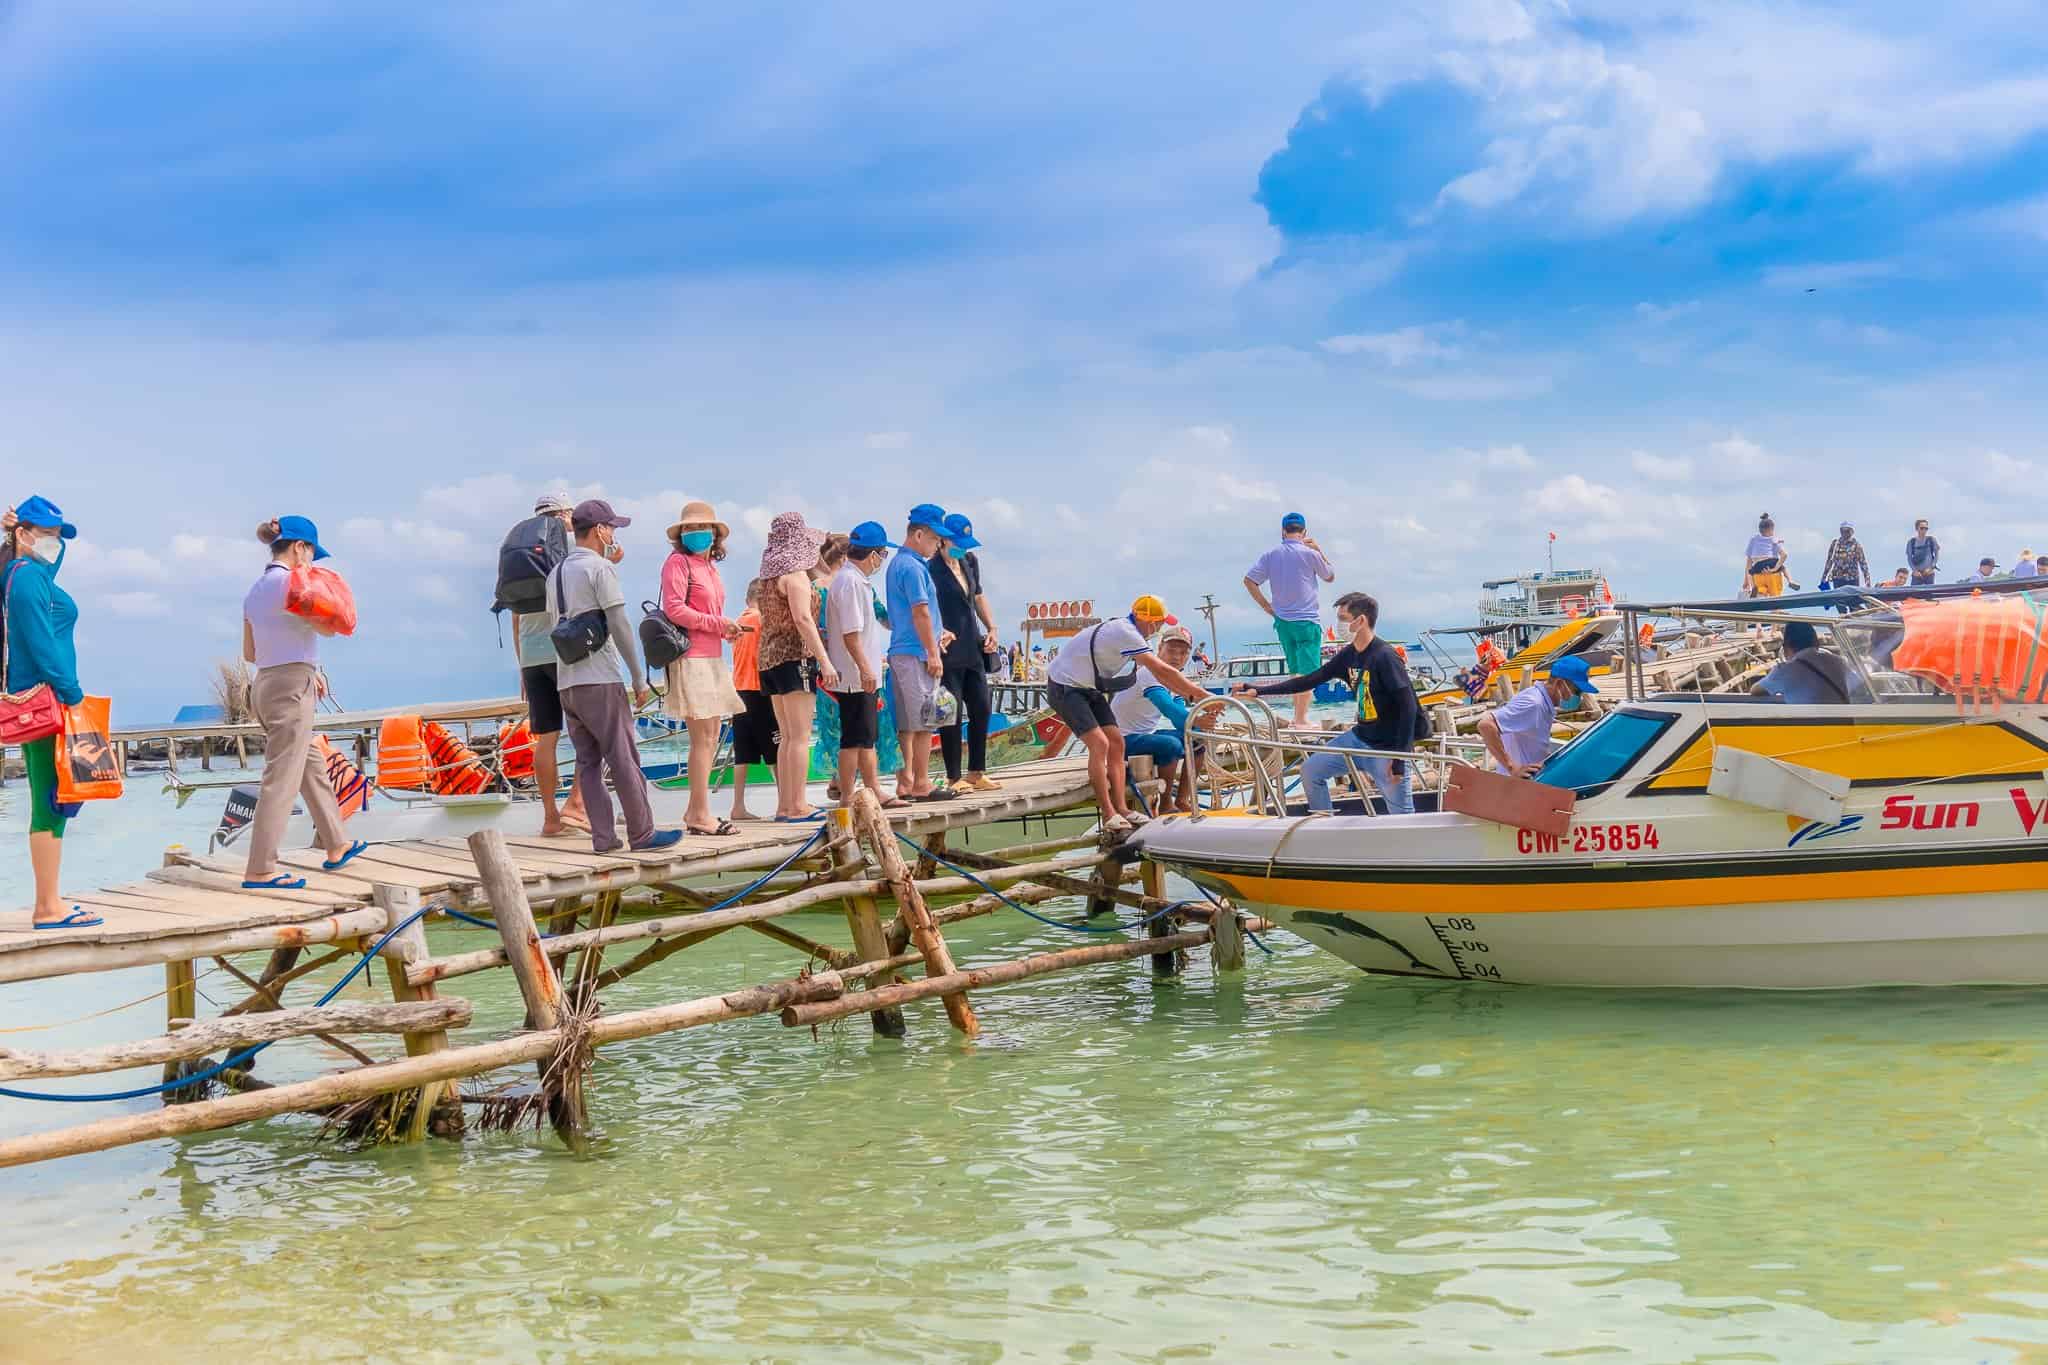 Sun Việt Travel là đơn vị tổ chức tour cano 4 đảo uy tín, chất lượng tại Phú Quốc